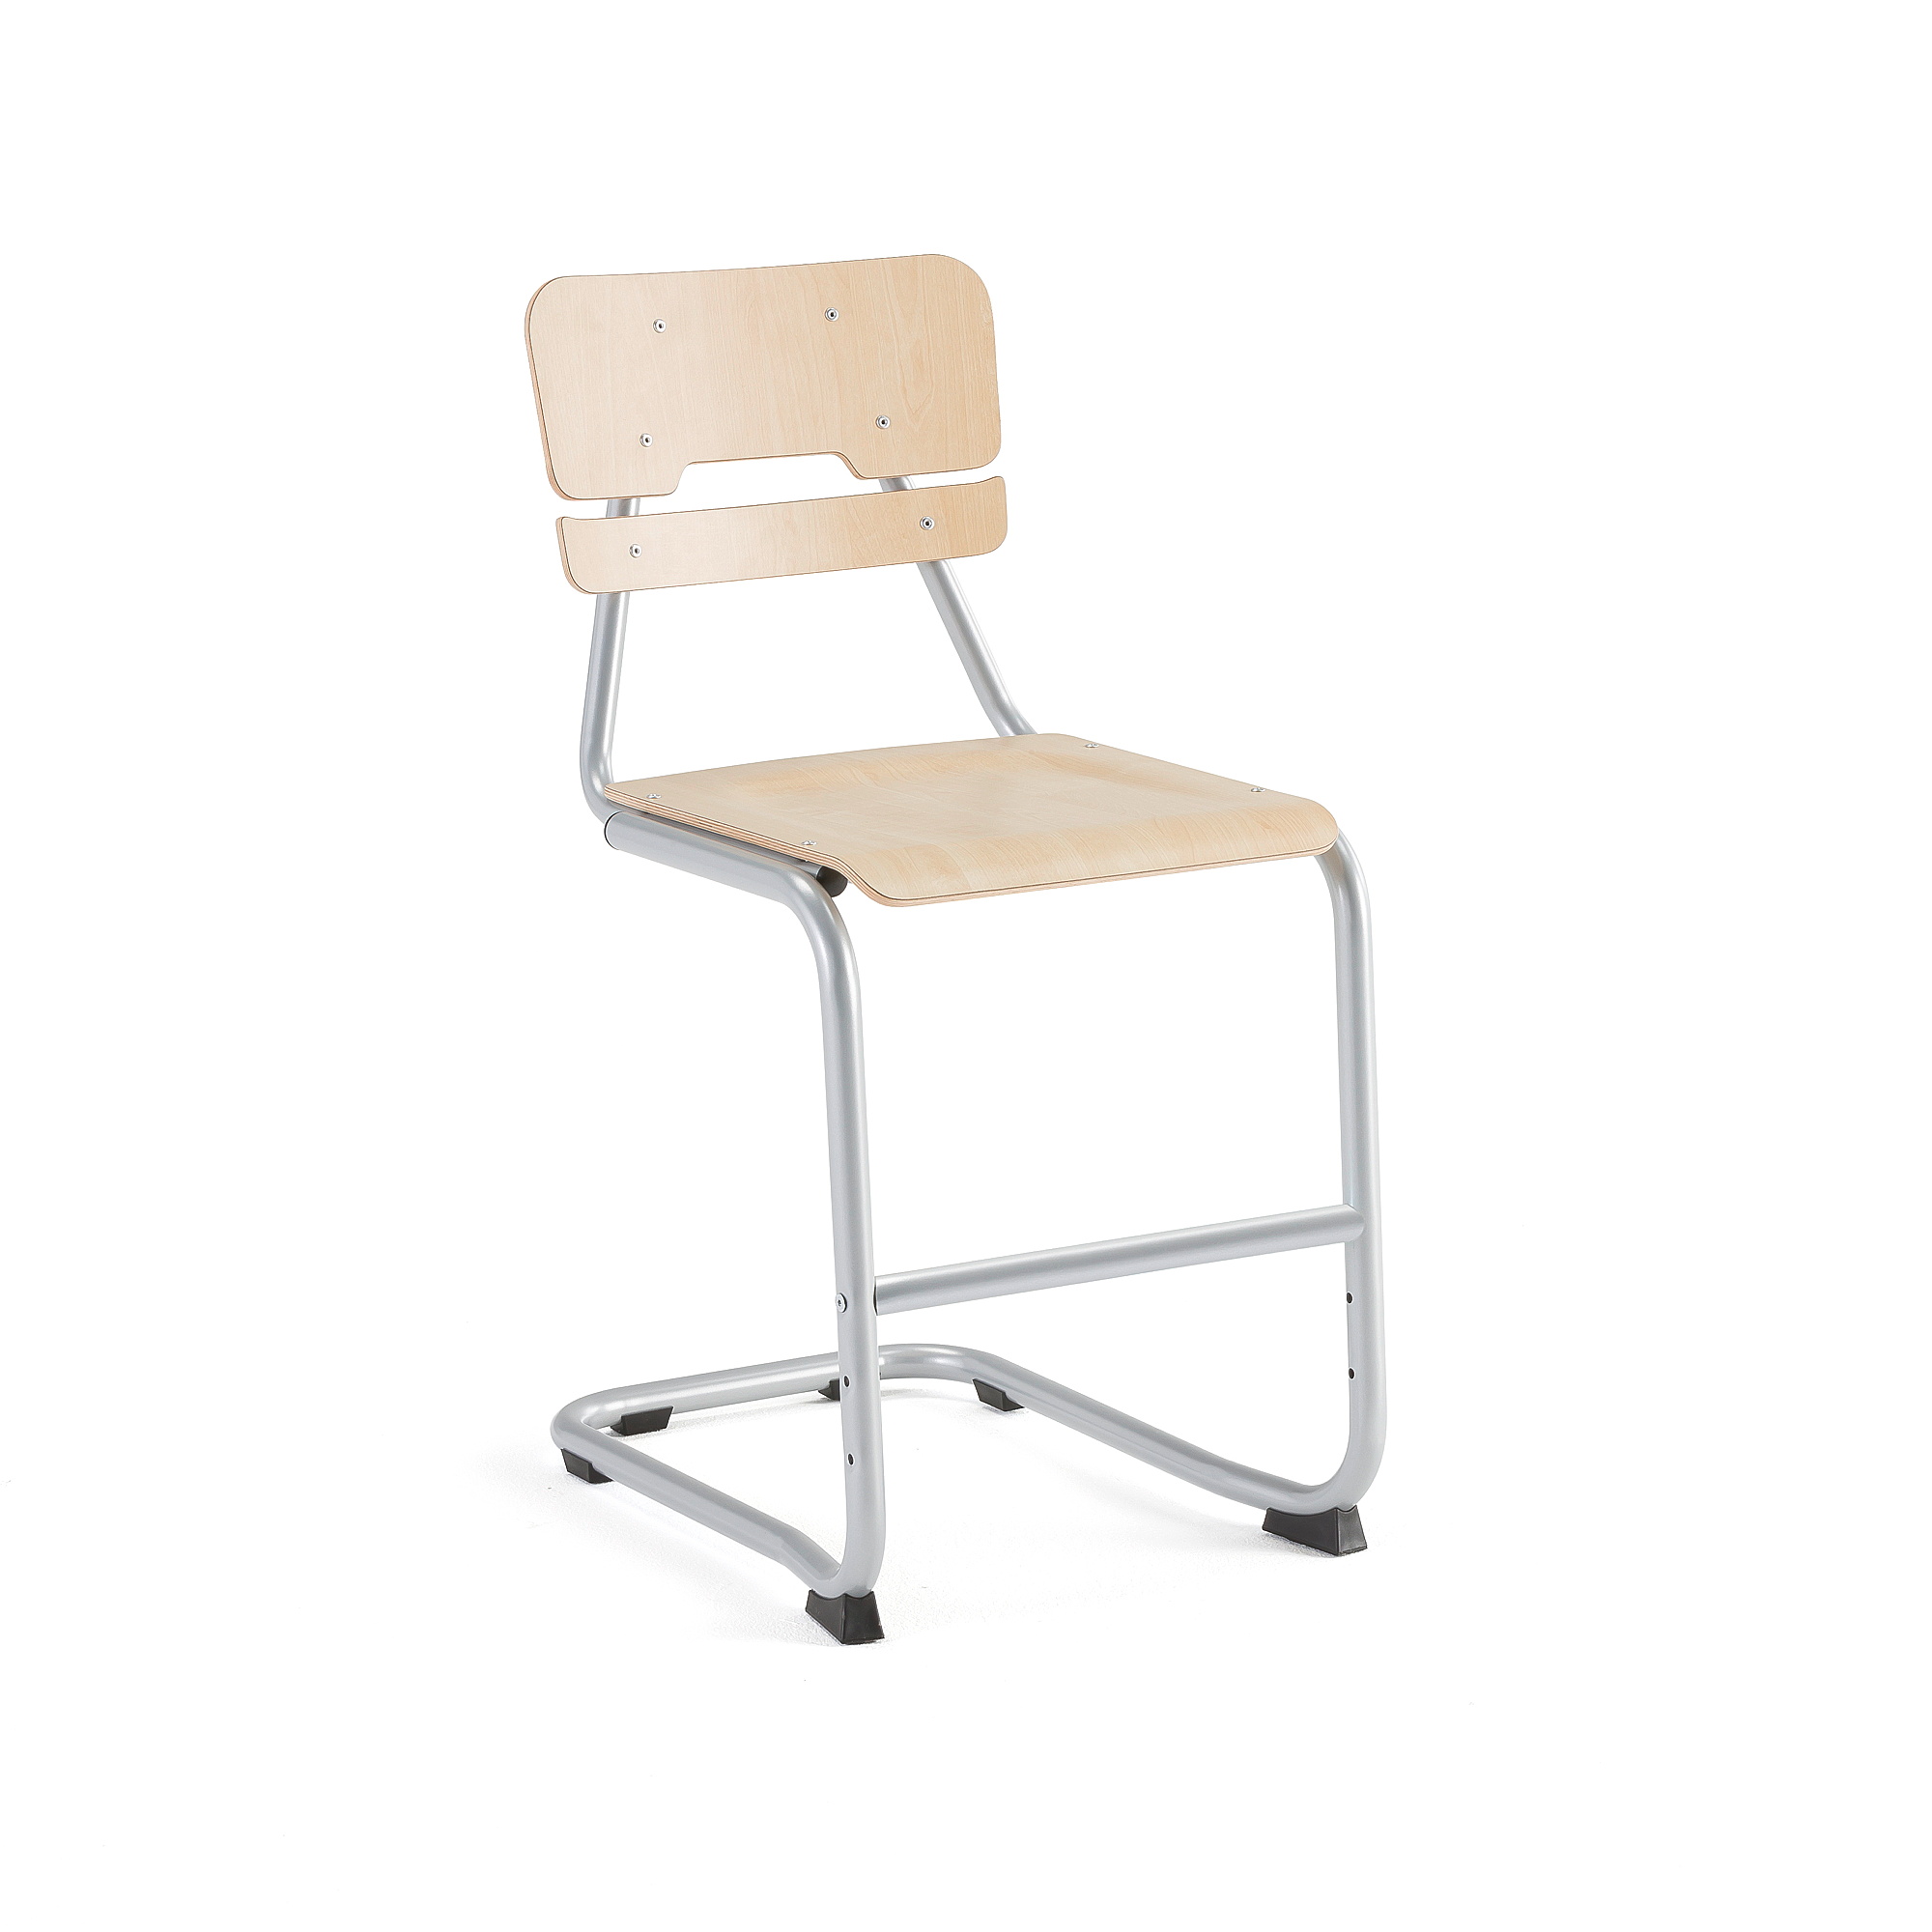 Školní židle LEGERE I, výška 500 mm, bříza